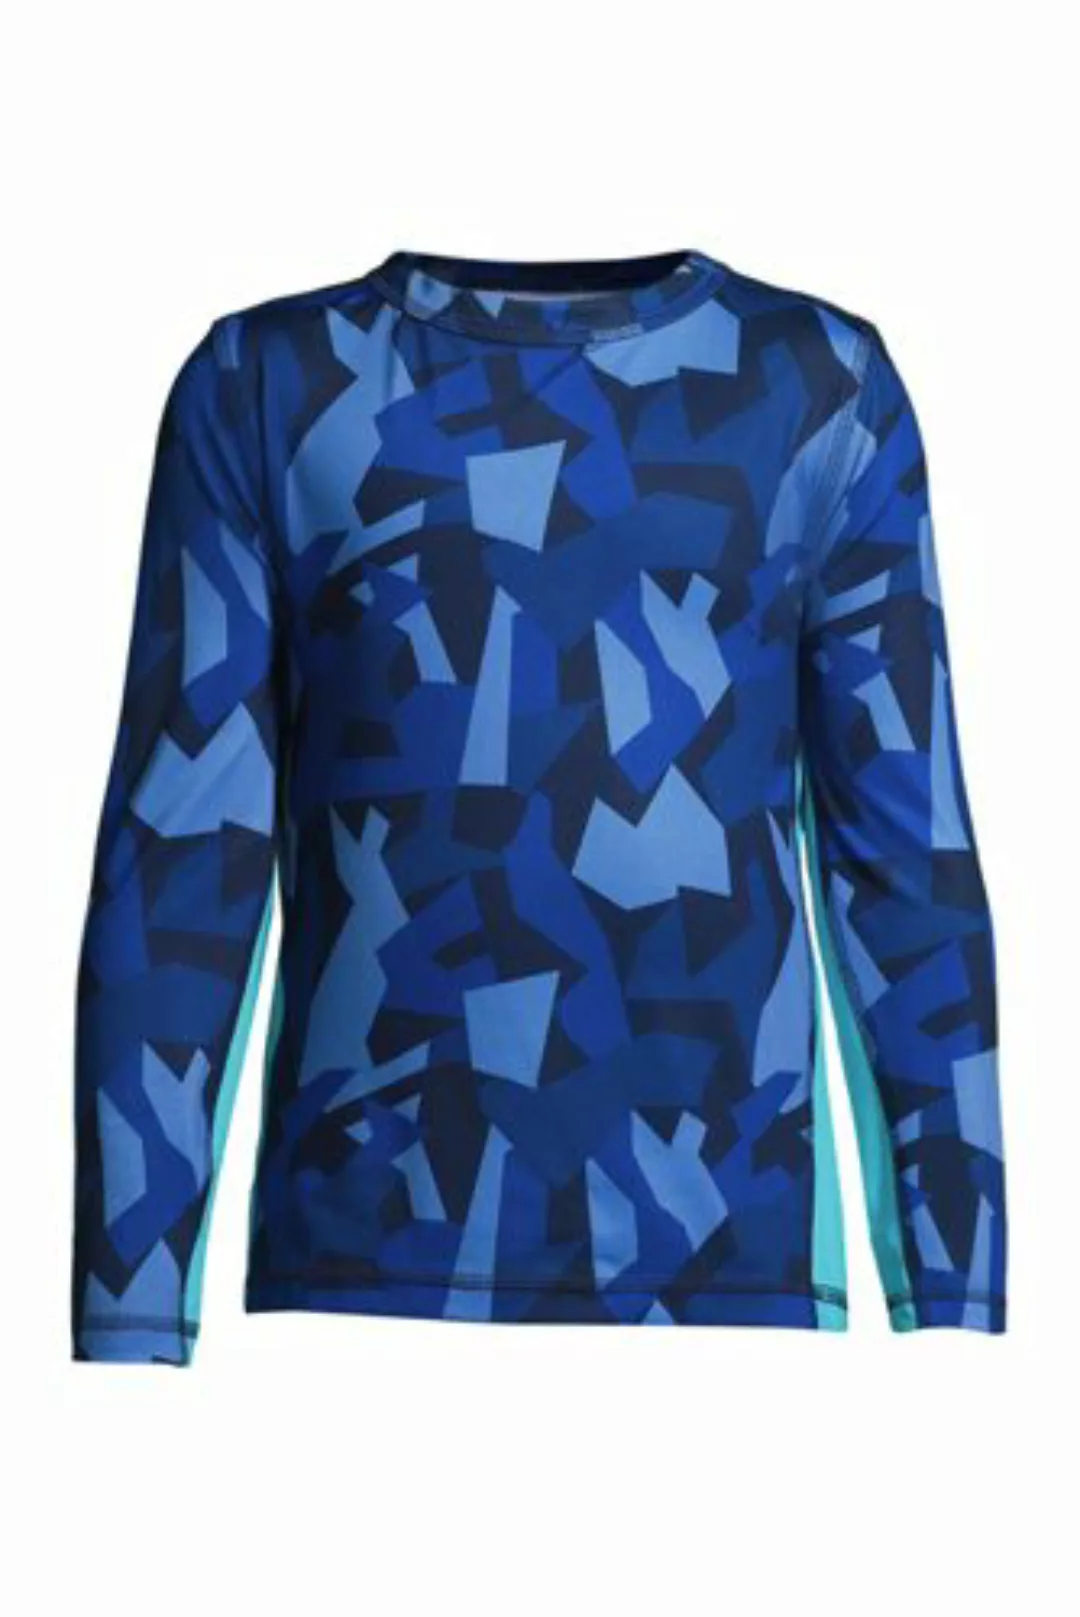 Active Langarm-Shirt Camouflage, Größe: 152-164, Blau, Polyester-Mischung, günstig online kaufen